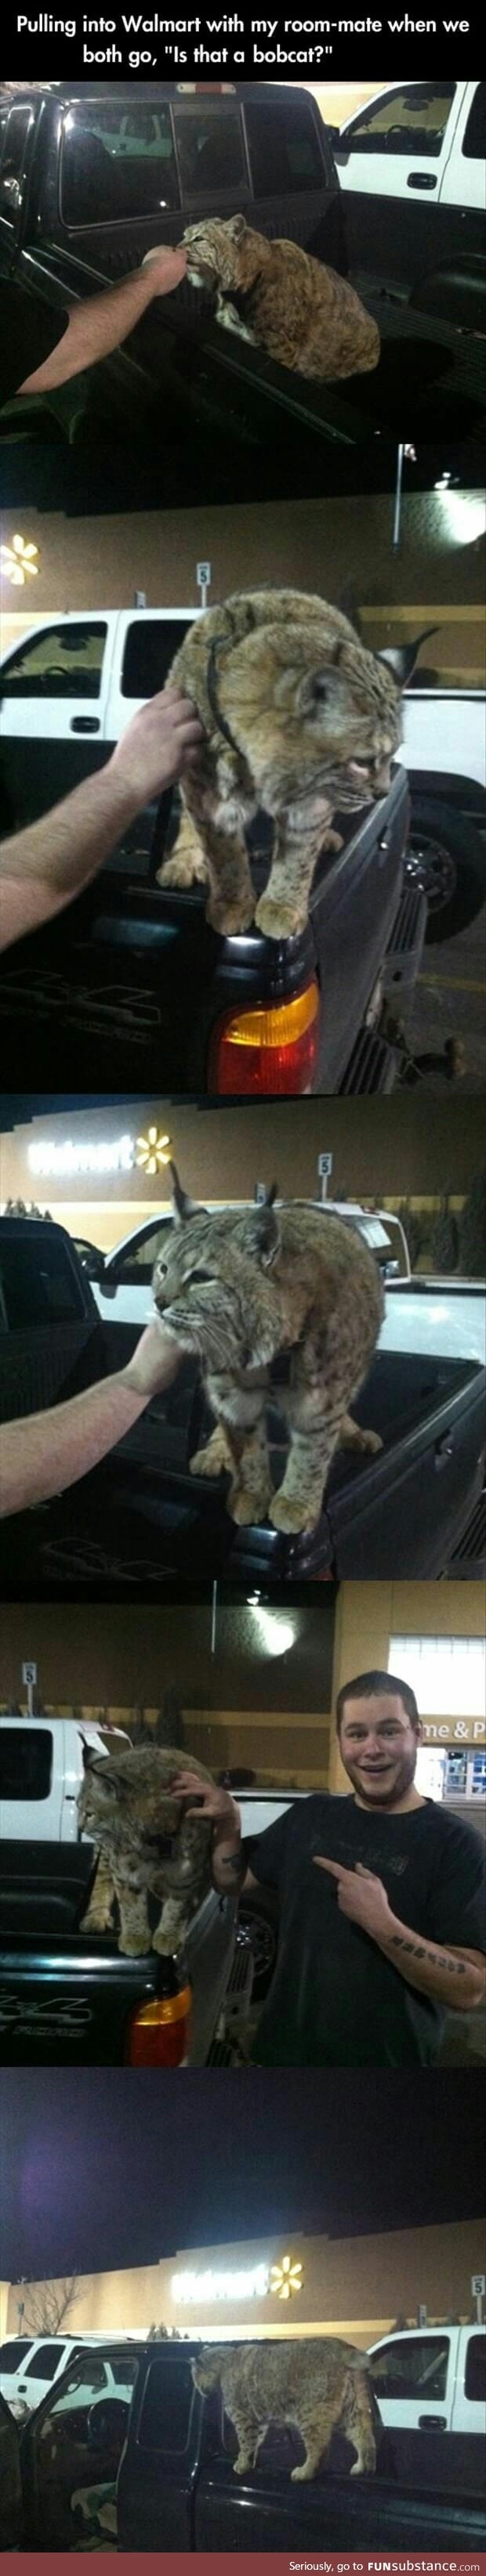 Who brings a bobcat to Walmart?!